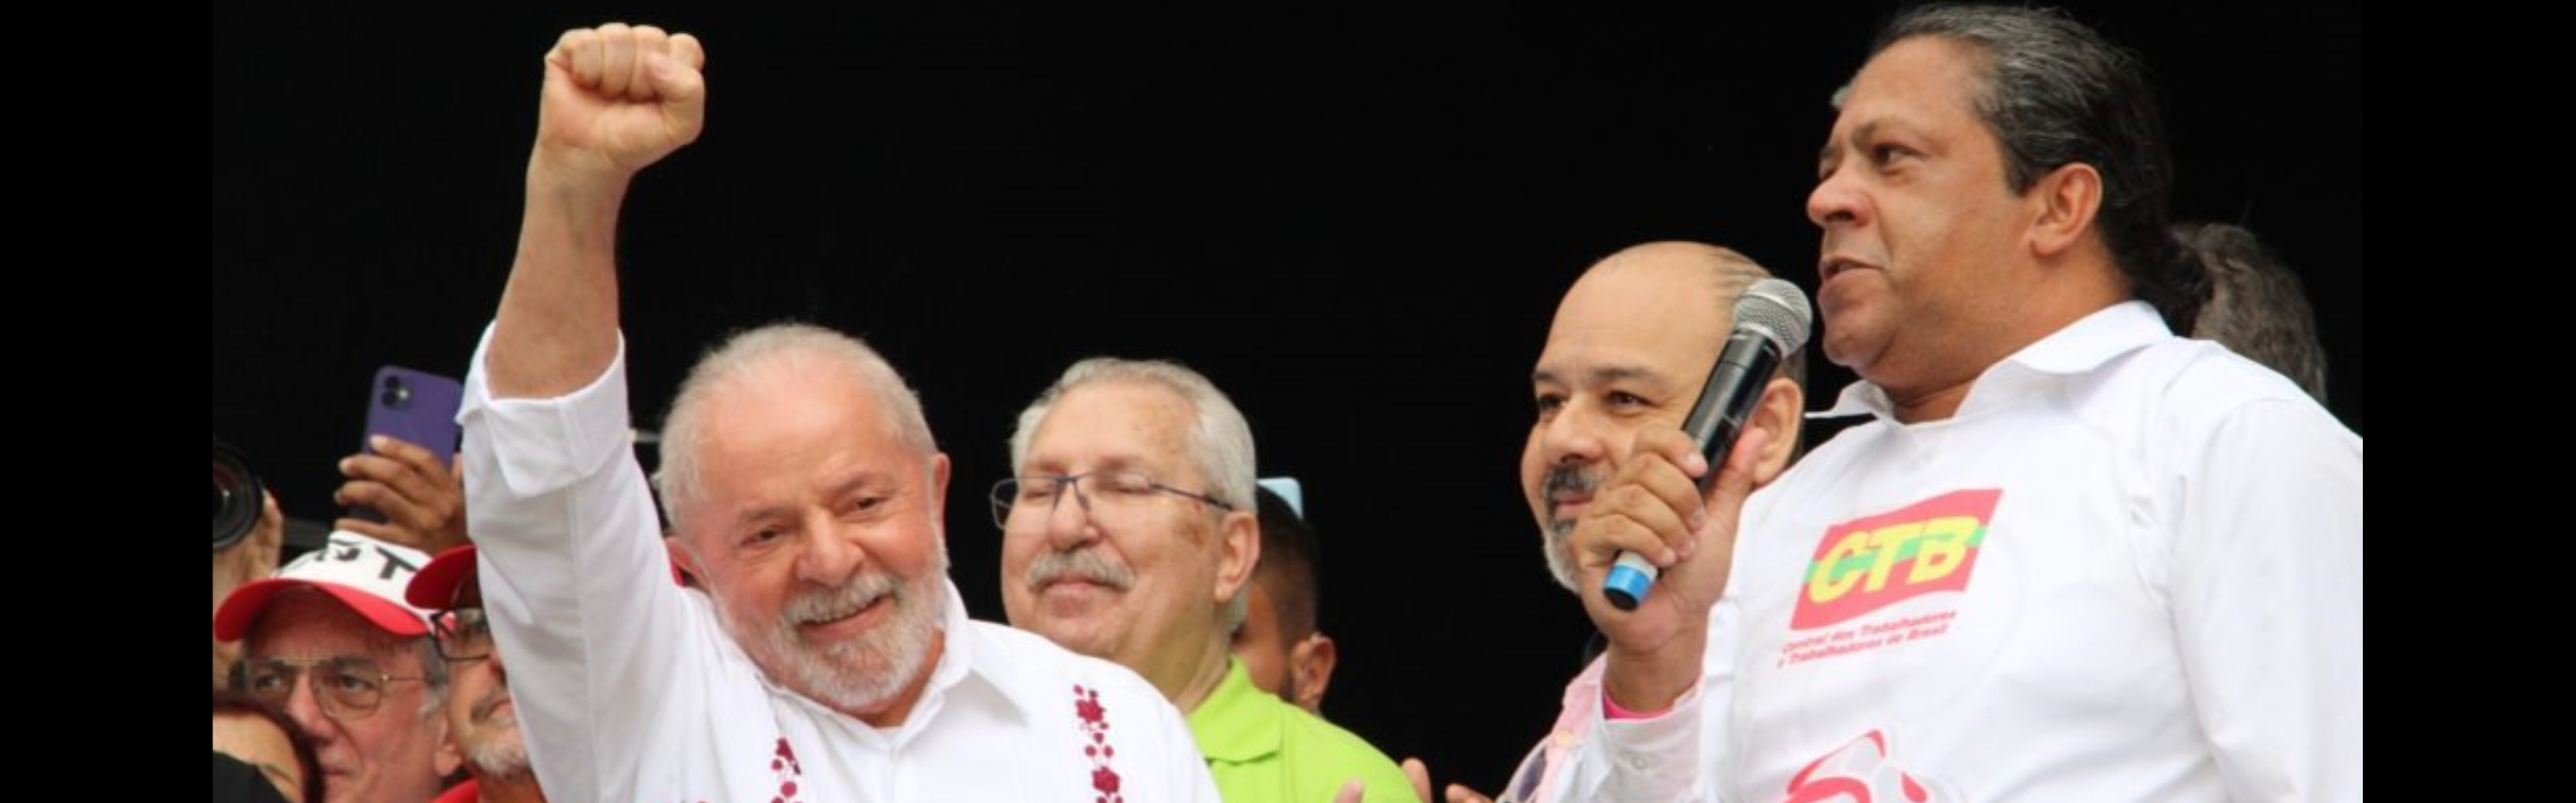 1° de maio: Presidente Lula participará do ato nacional unificado na Neo Química Arena (estádio do Corinthians), em São Paulo